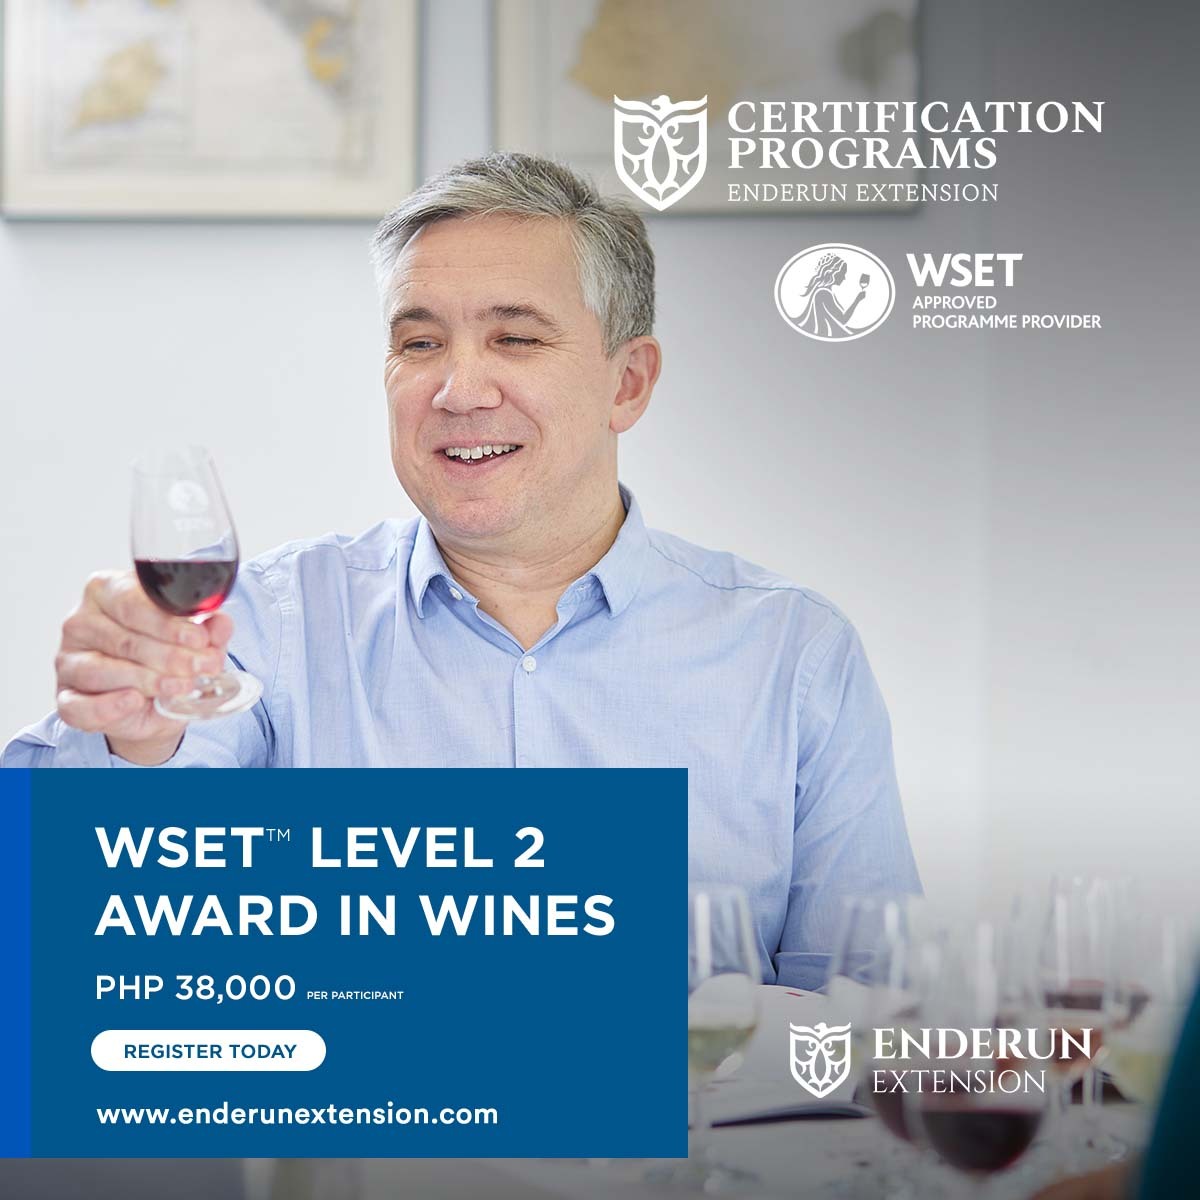 WSET Level 2 in Wines